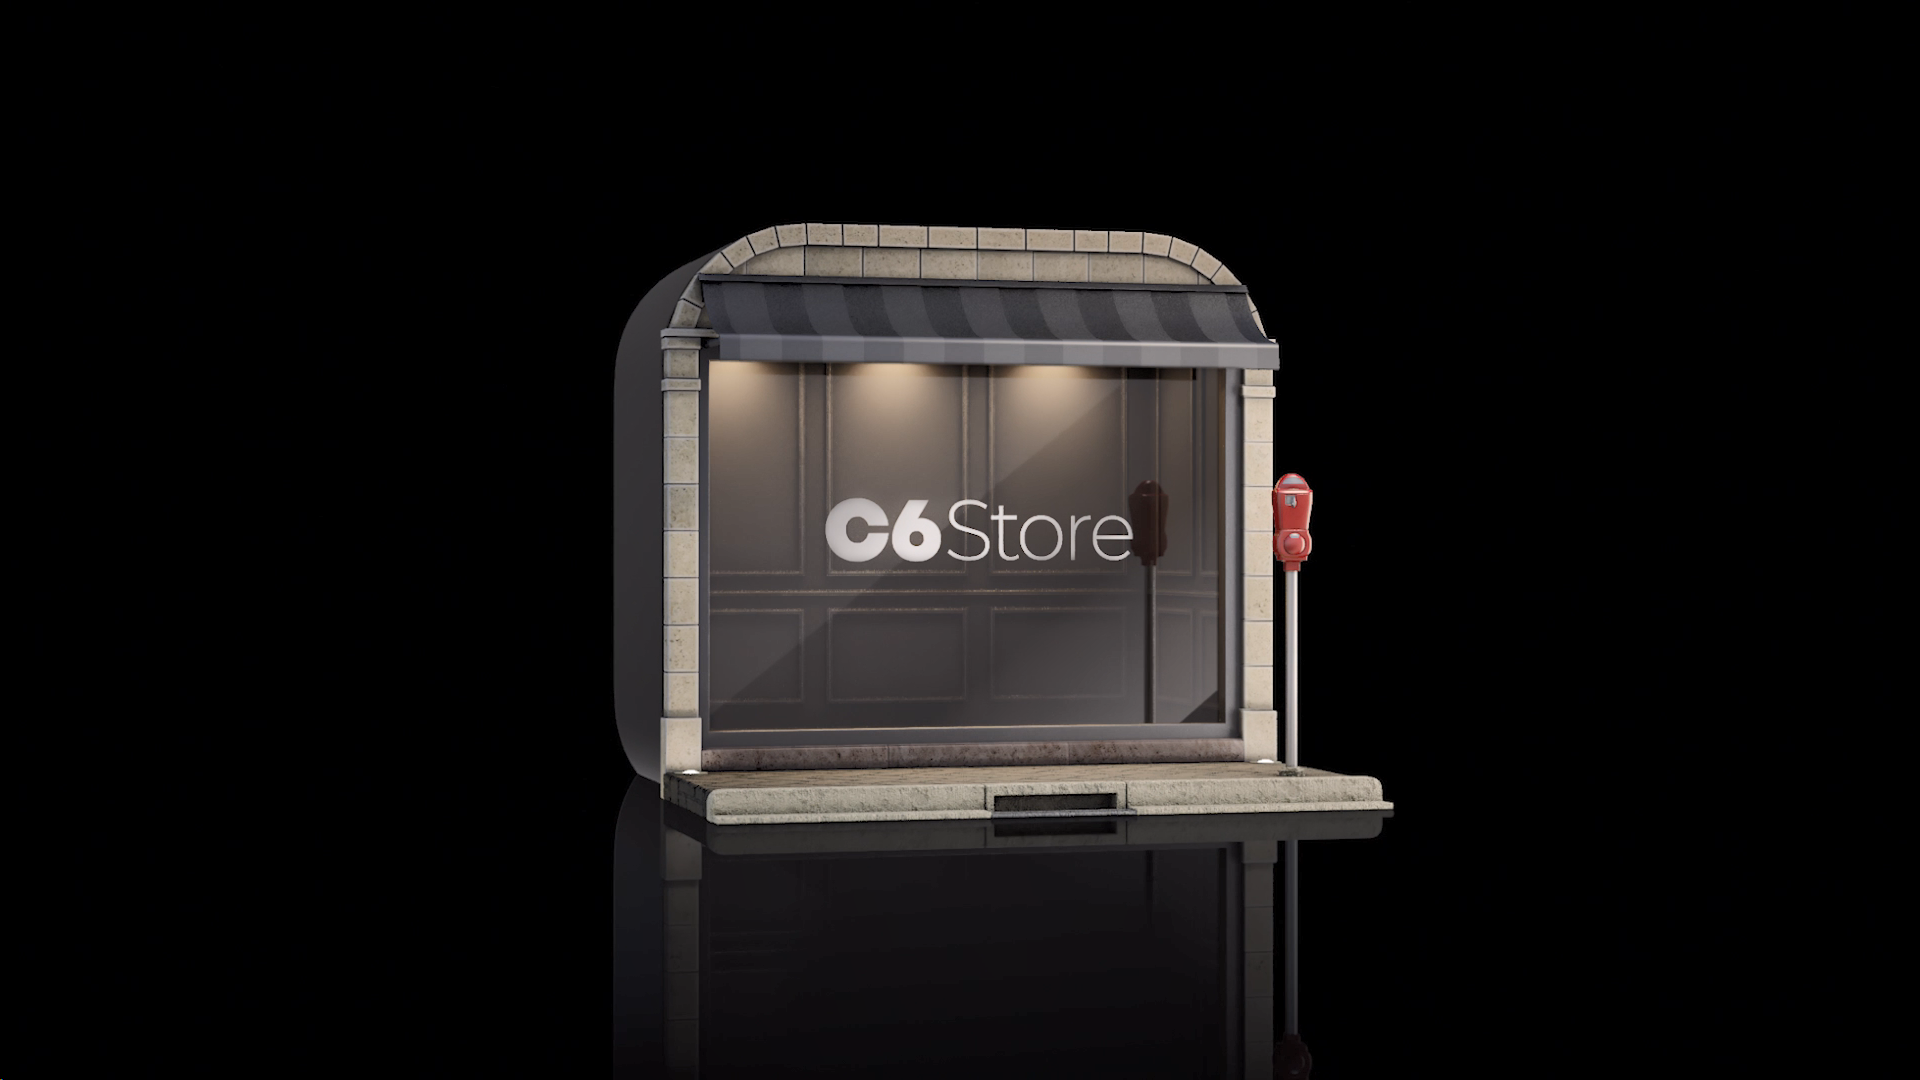 Imagem virtual de uma loja com C6 Store escrito na vitrine